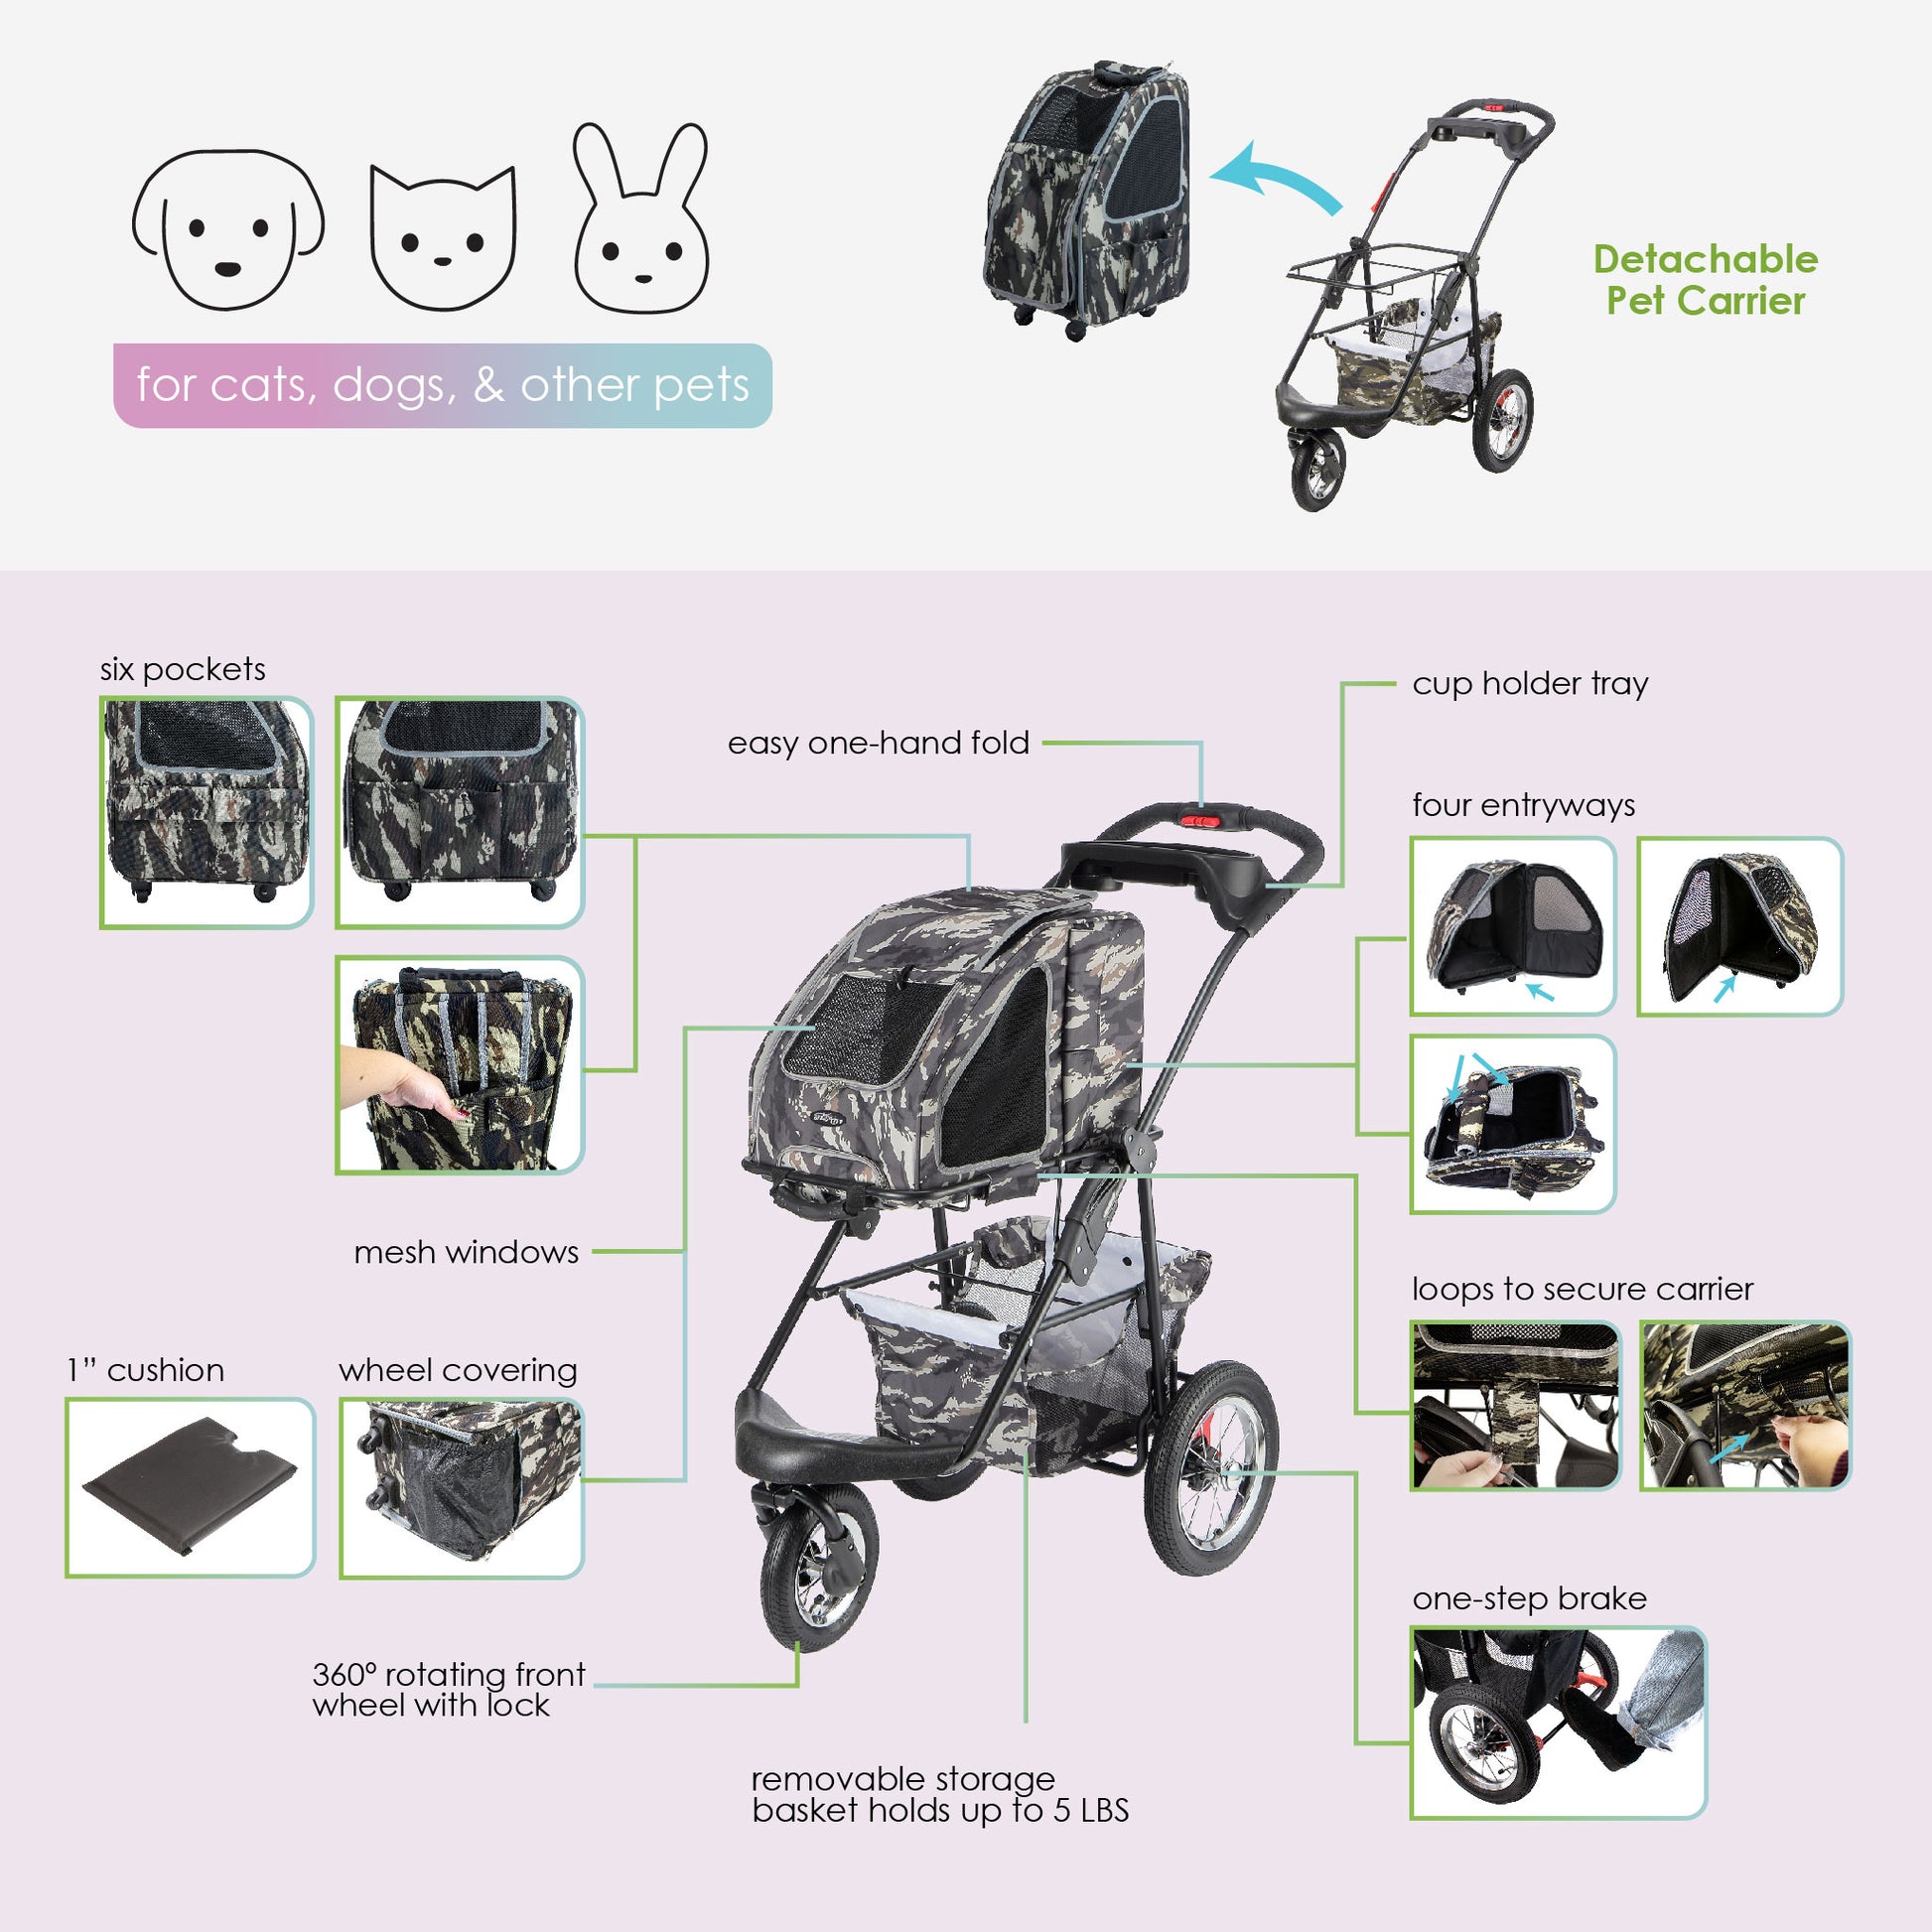 5-in-1 pet stroller features